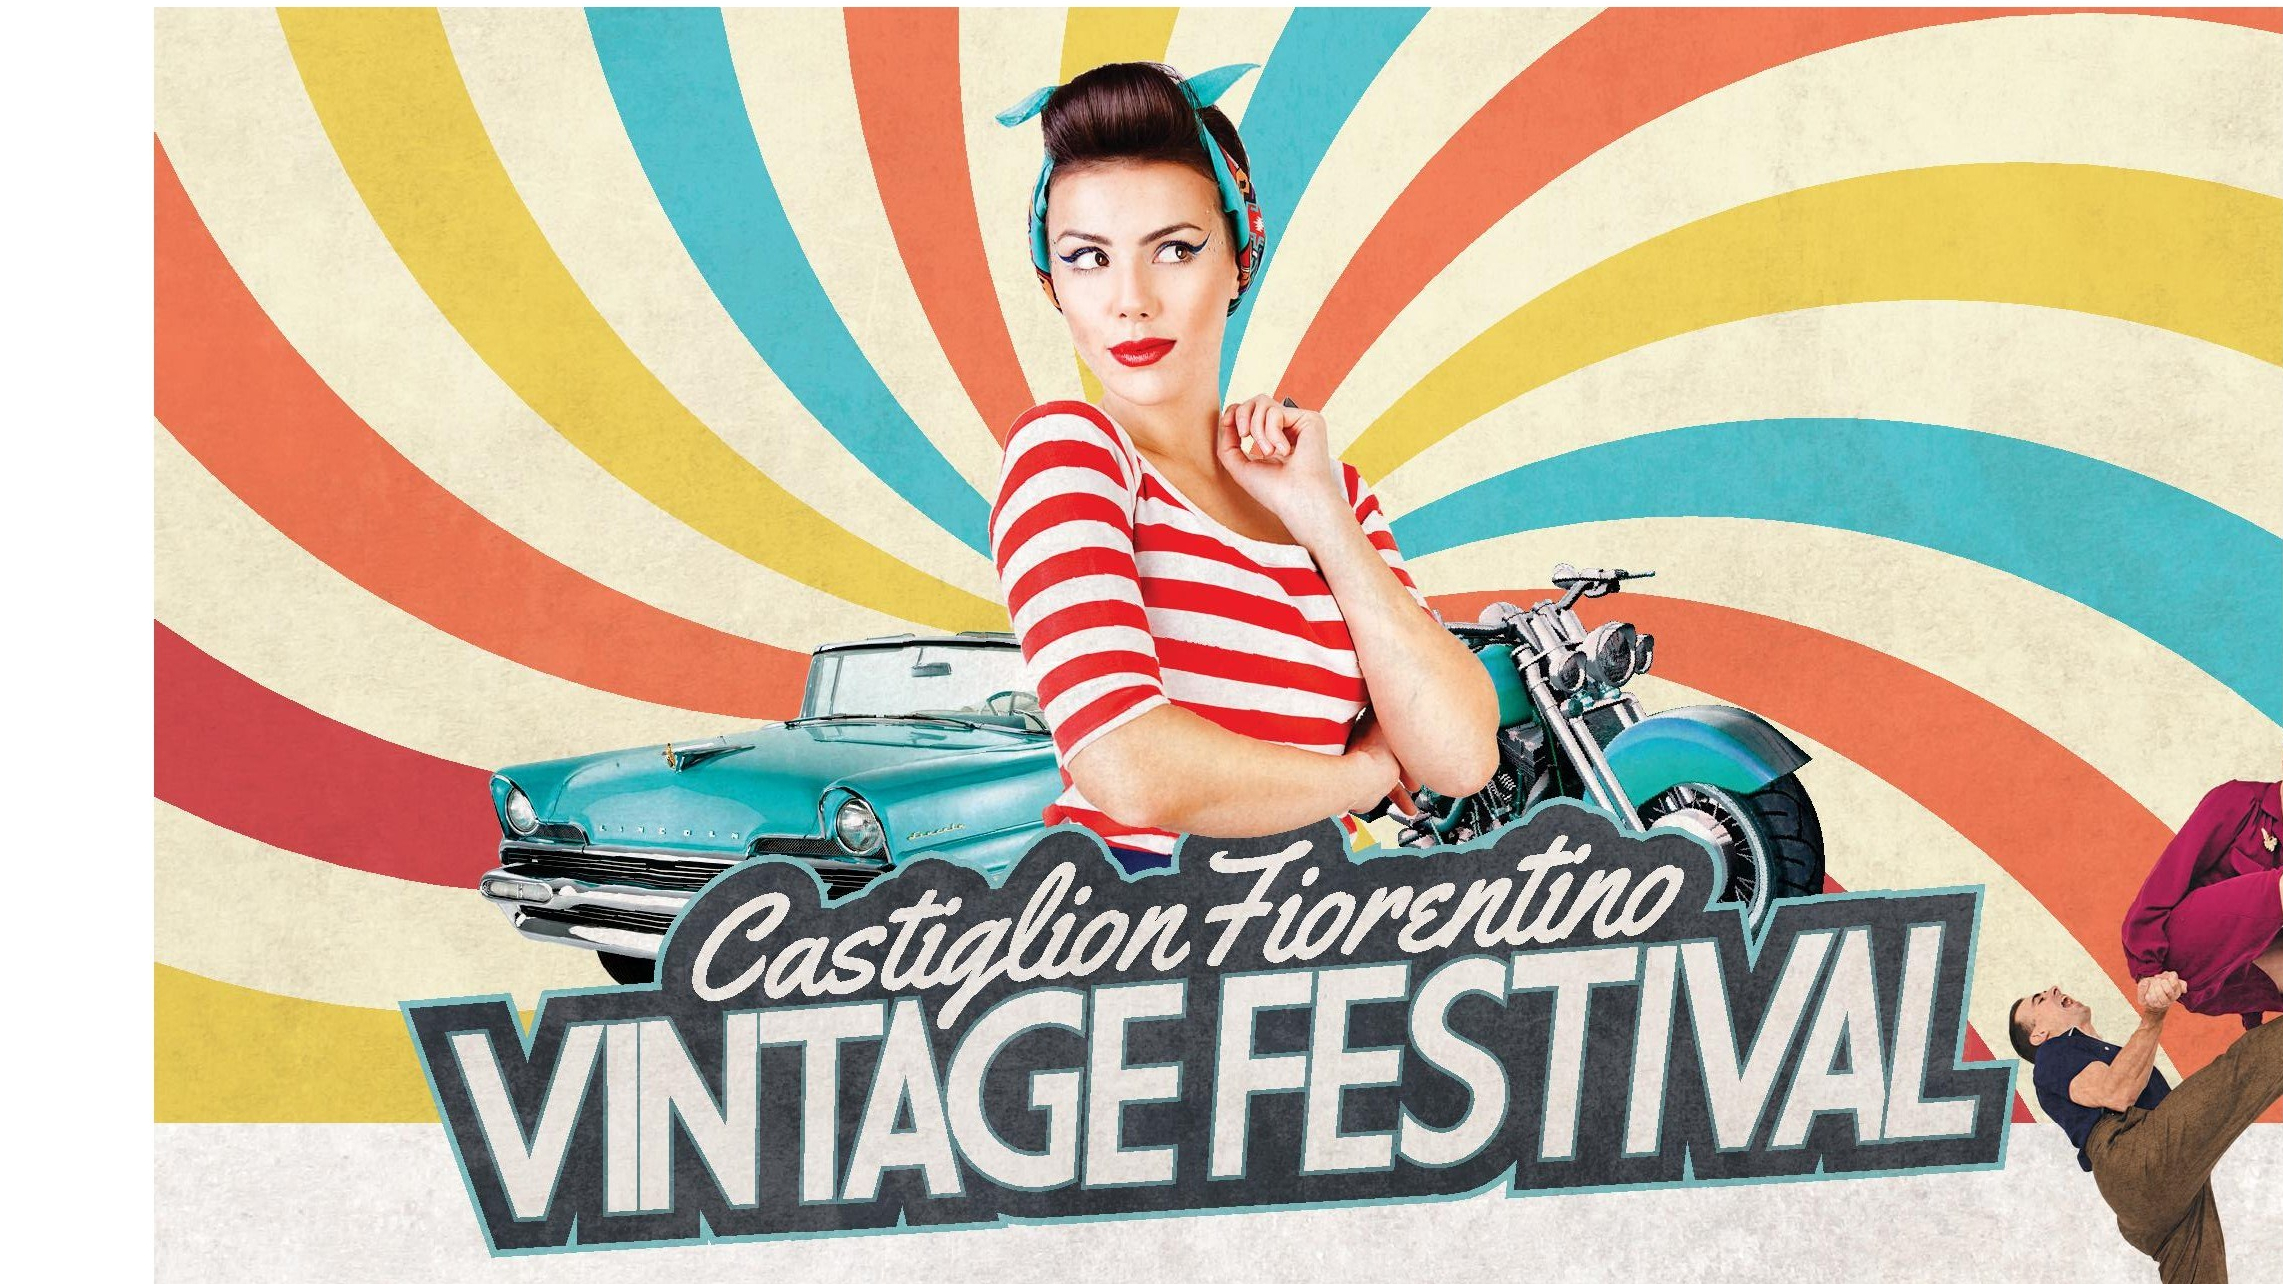 Torna, a Castiglion Fiorentino, il Vintage Festival edizione 2019